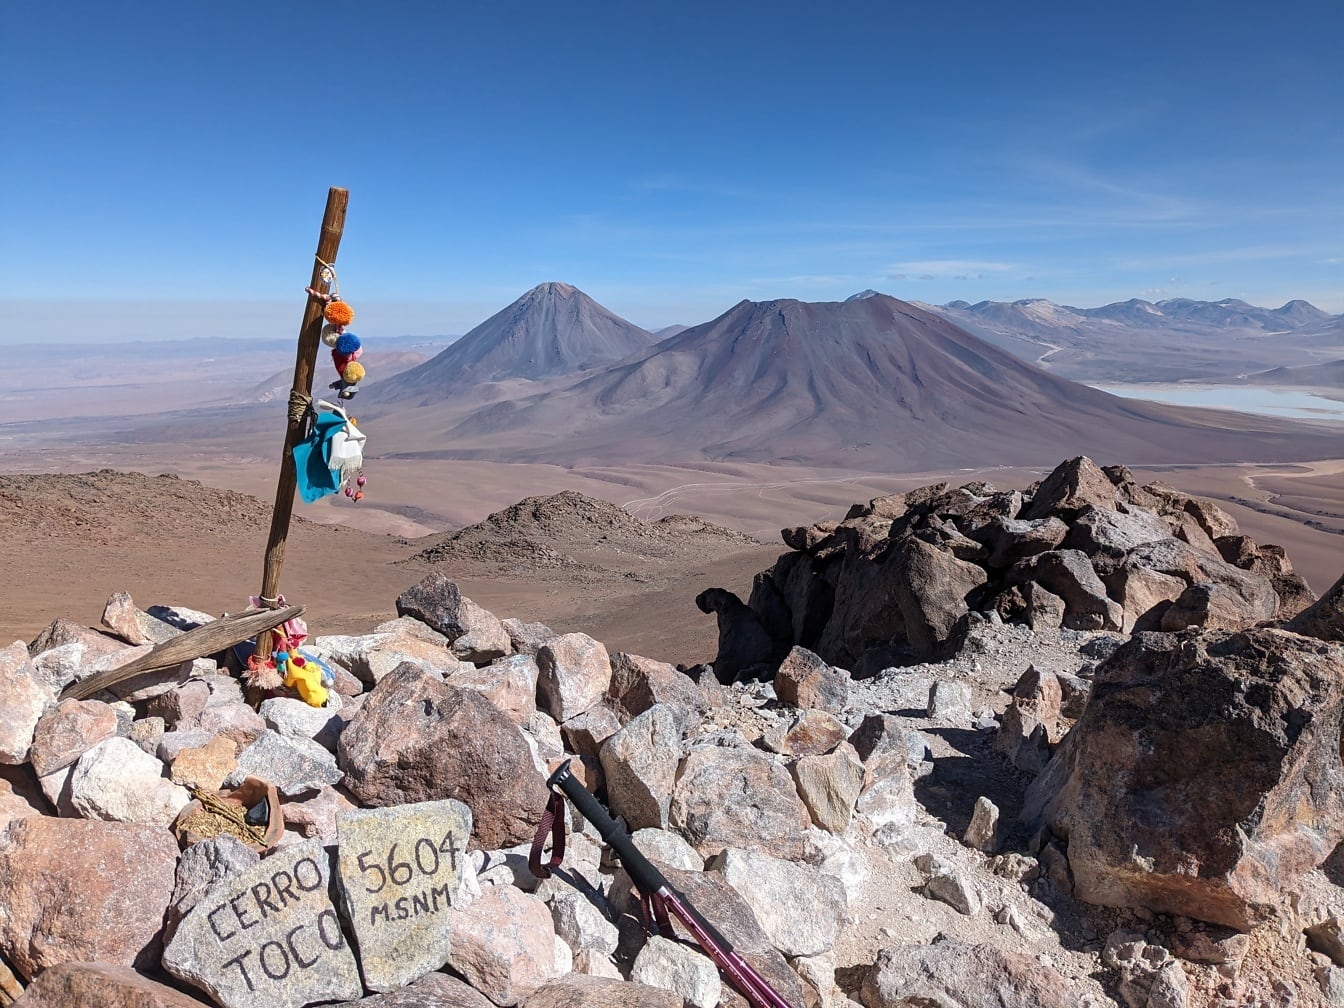 Vârful muntelui Cerro Toco din Chile, la 5604 de metri deasupra nivelului mării